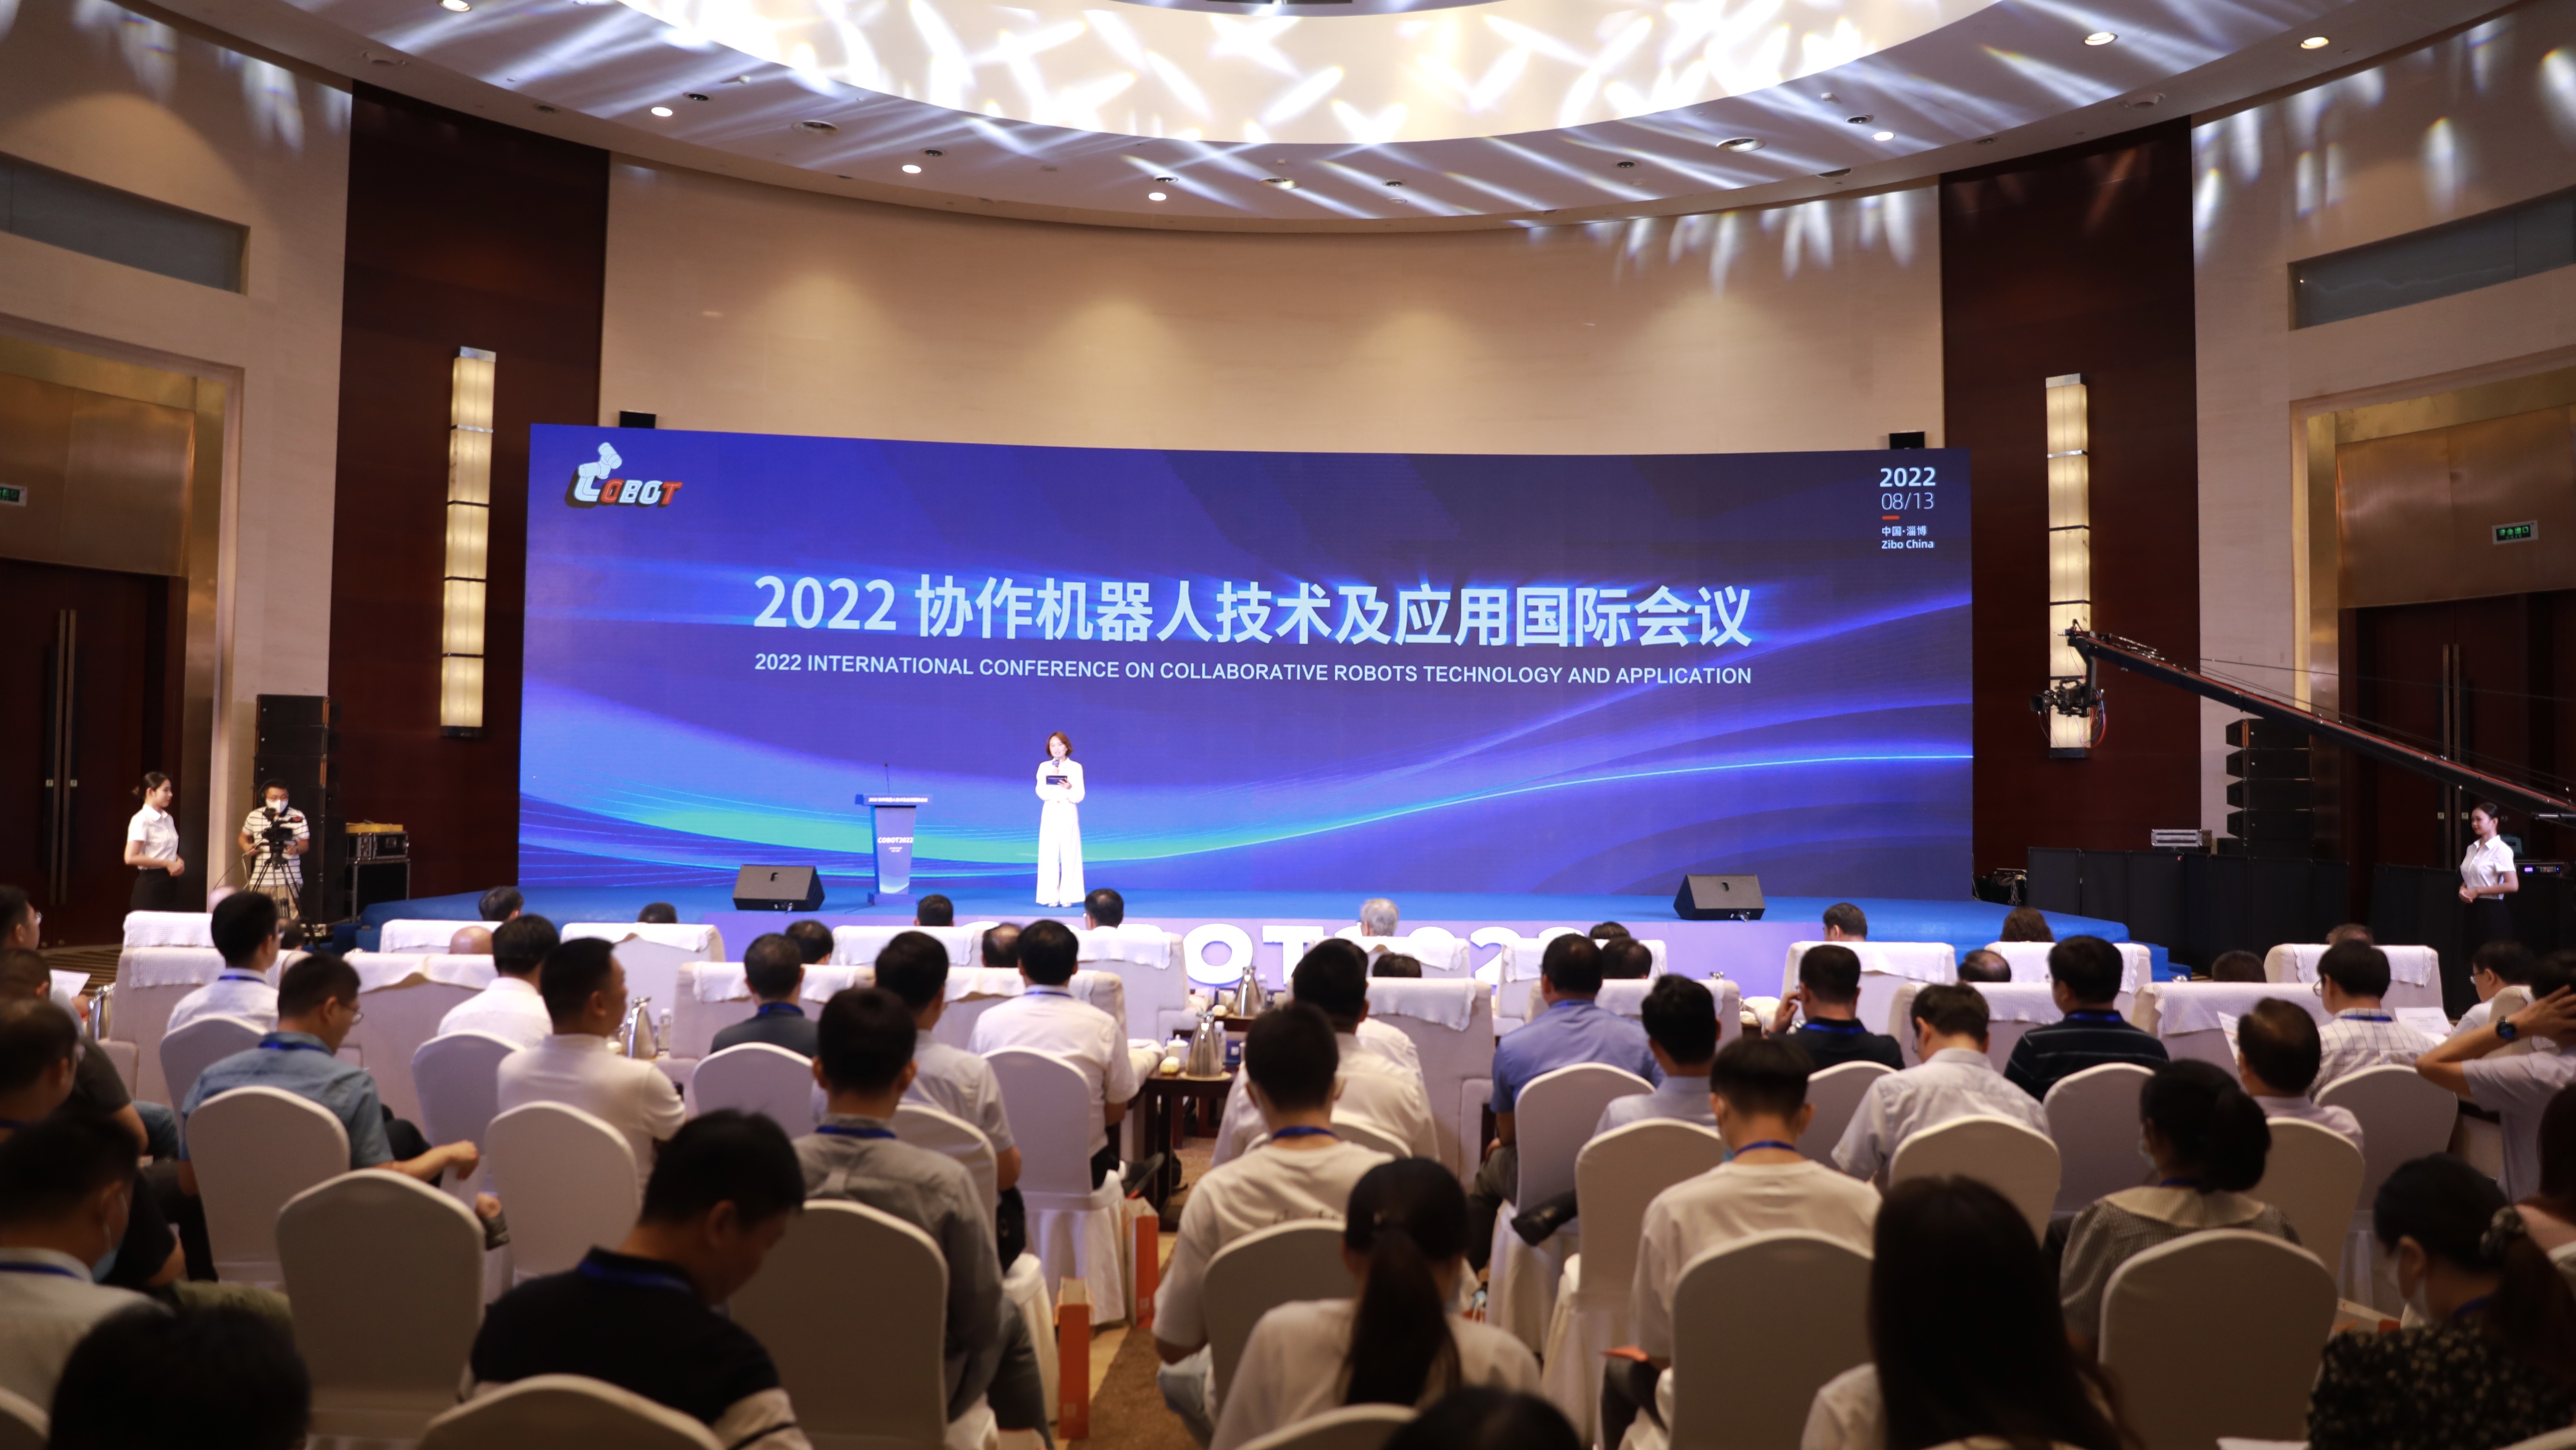 2022协作机器人技术及应用国际会议开幕